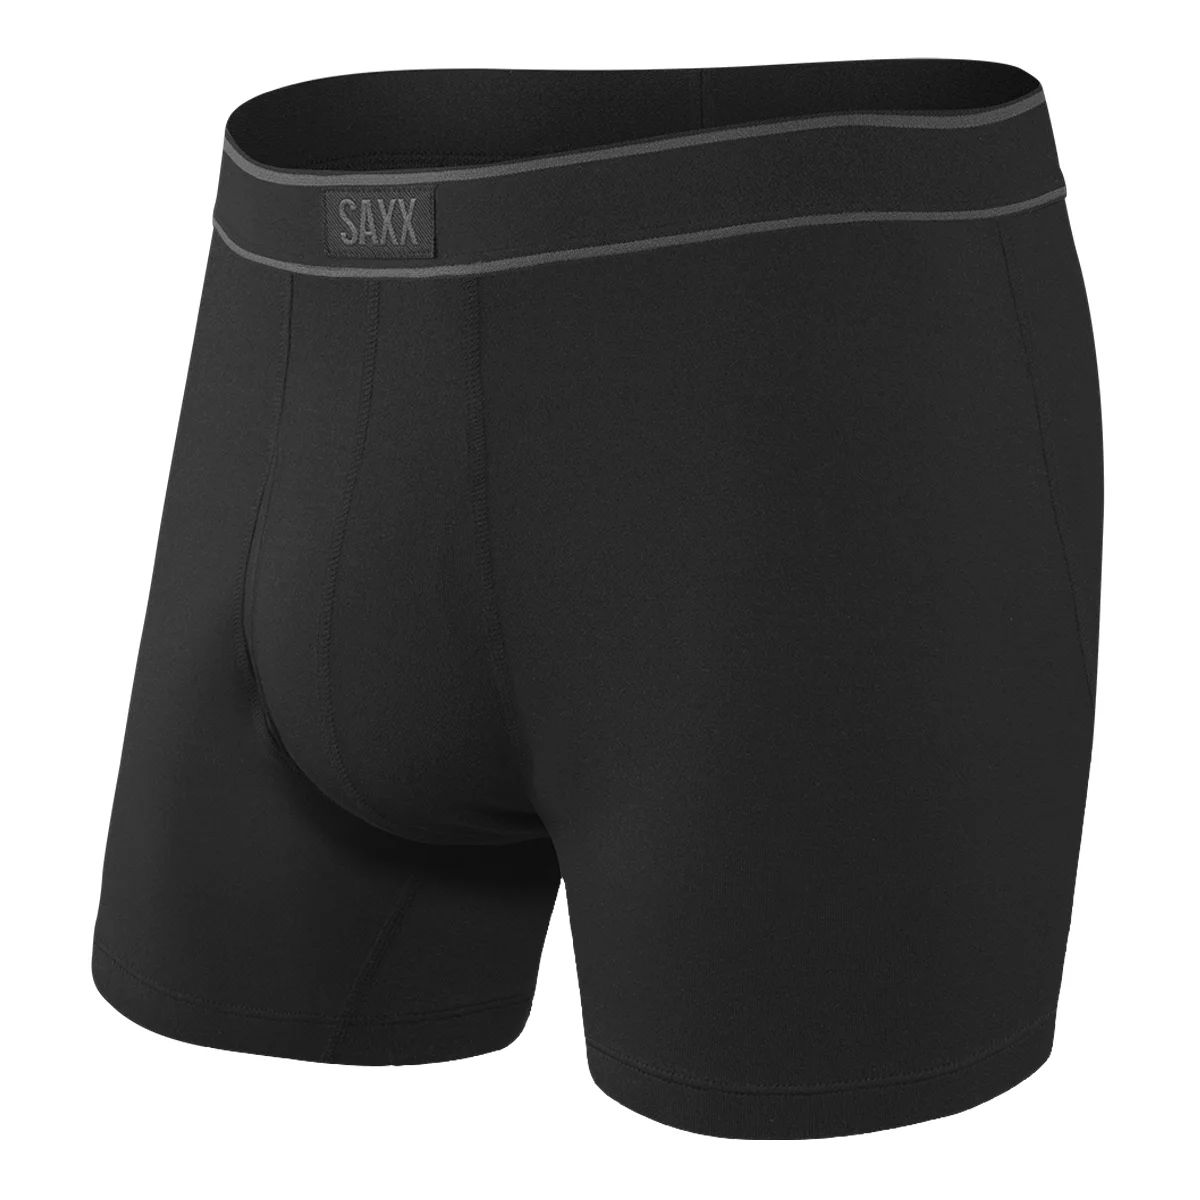 Saxx Daytripper Men's Boxer Brief  Underwear Breathable